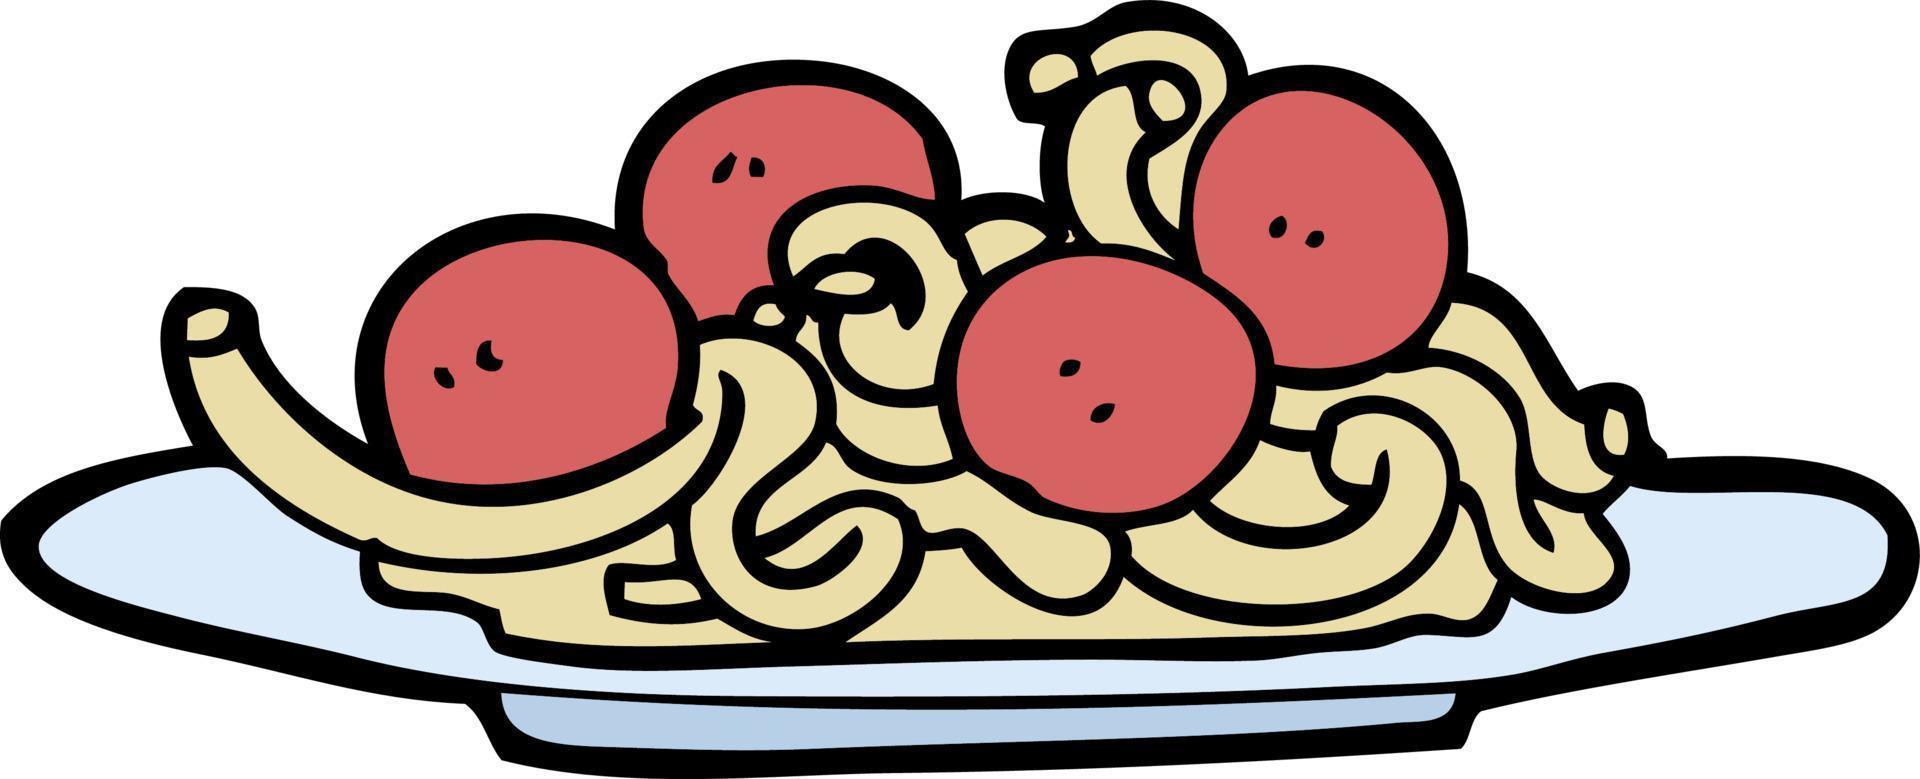 spaghettis et boulettes de viande de dessin animé de style doodle dessinés à la main vecteur